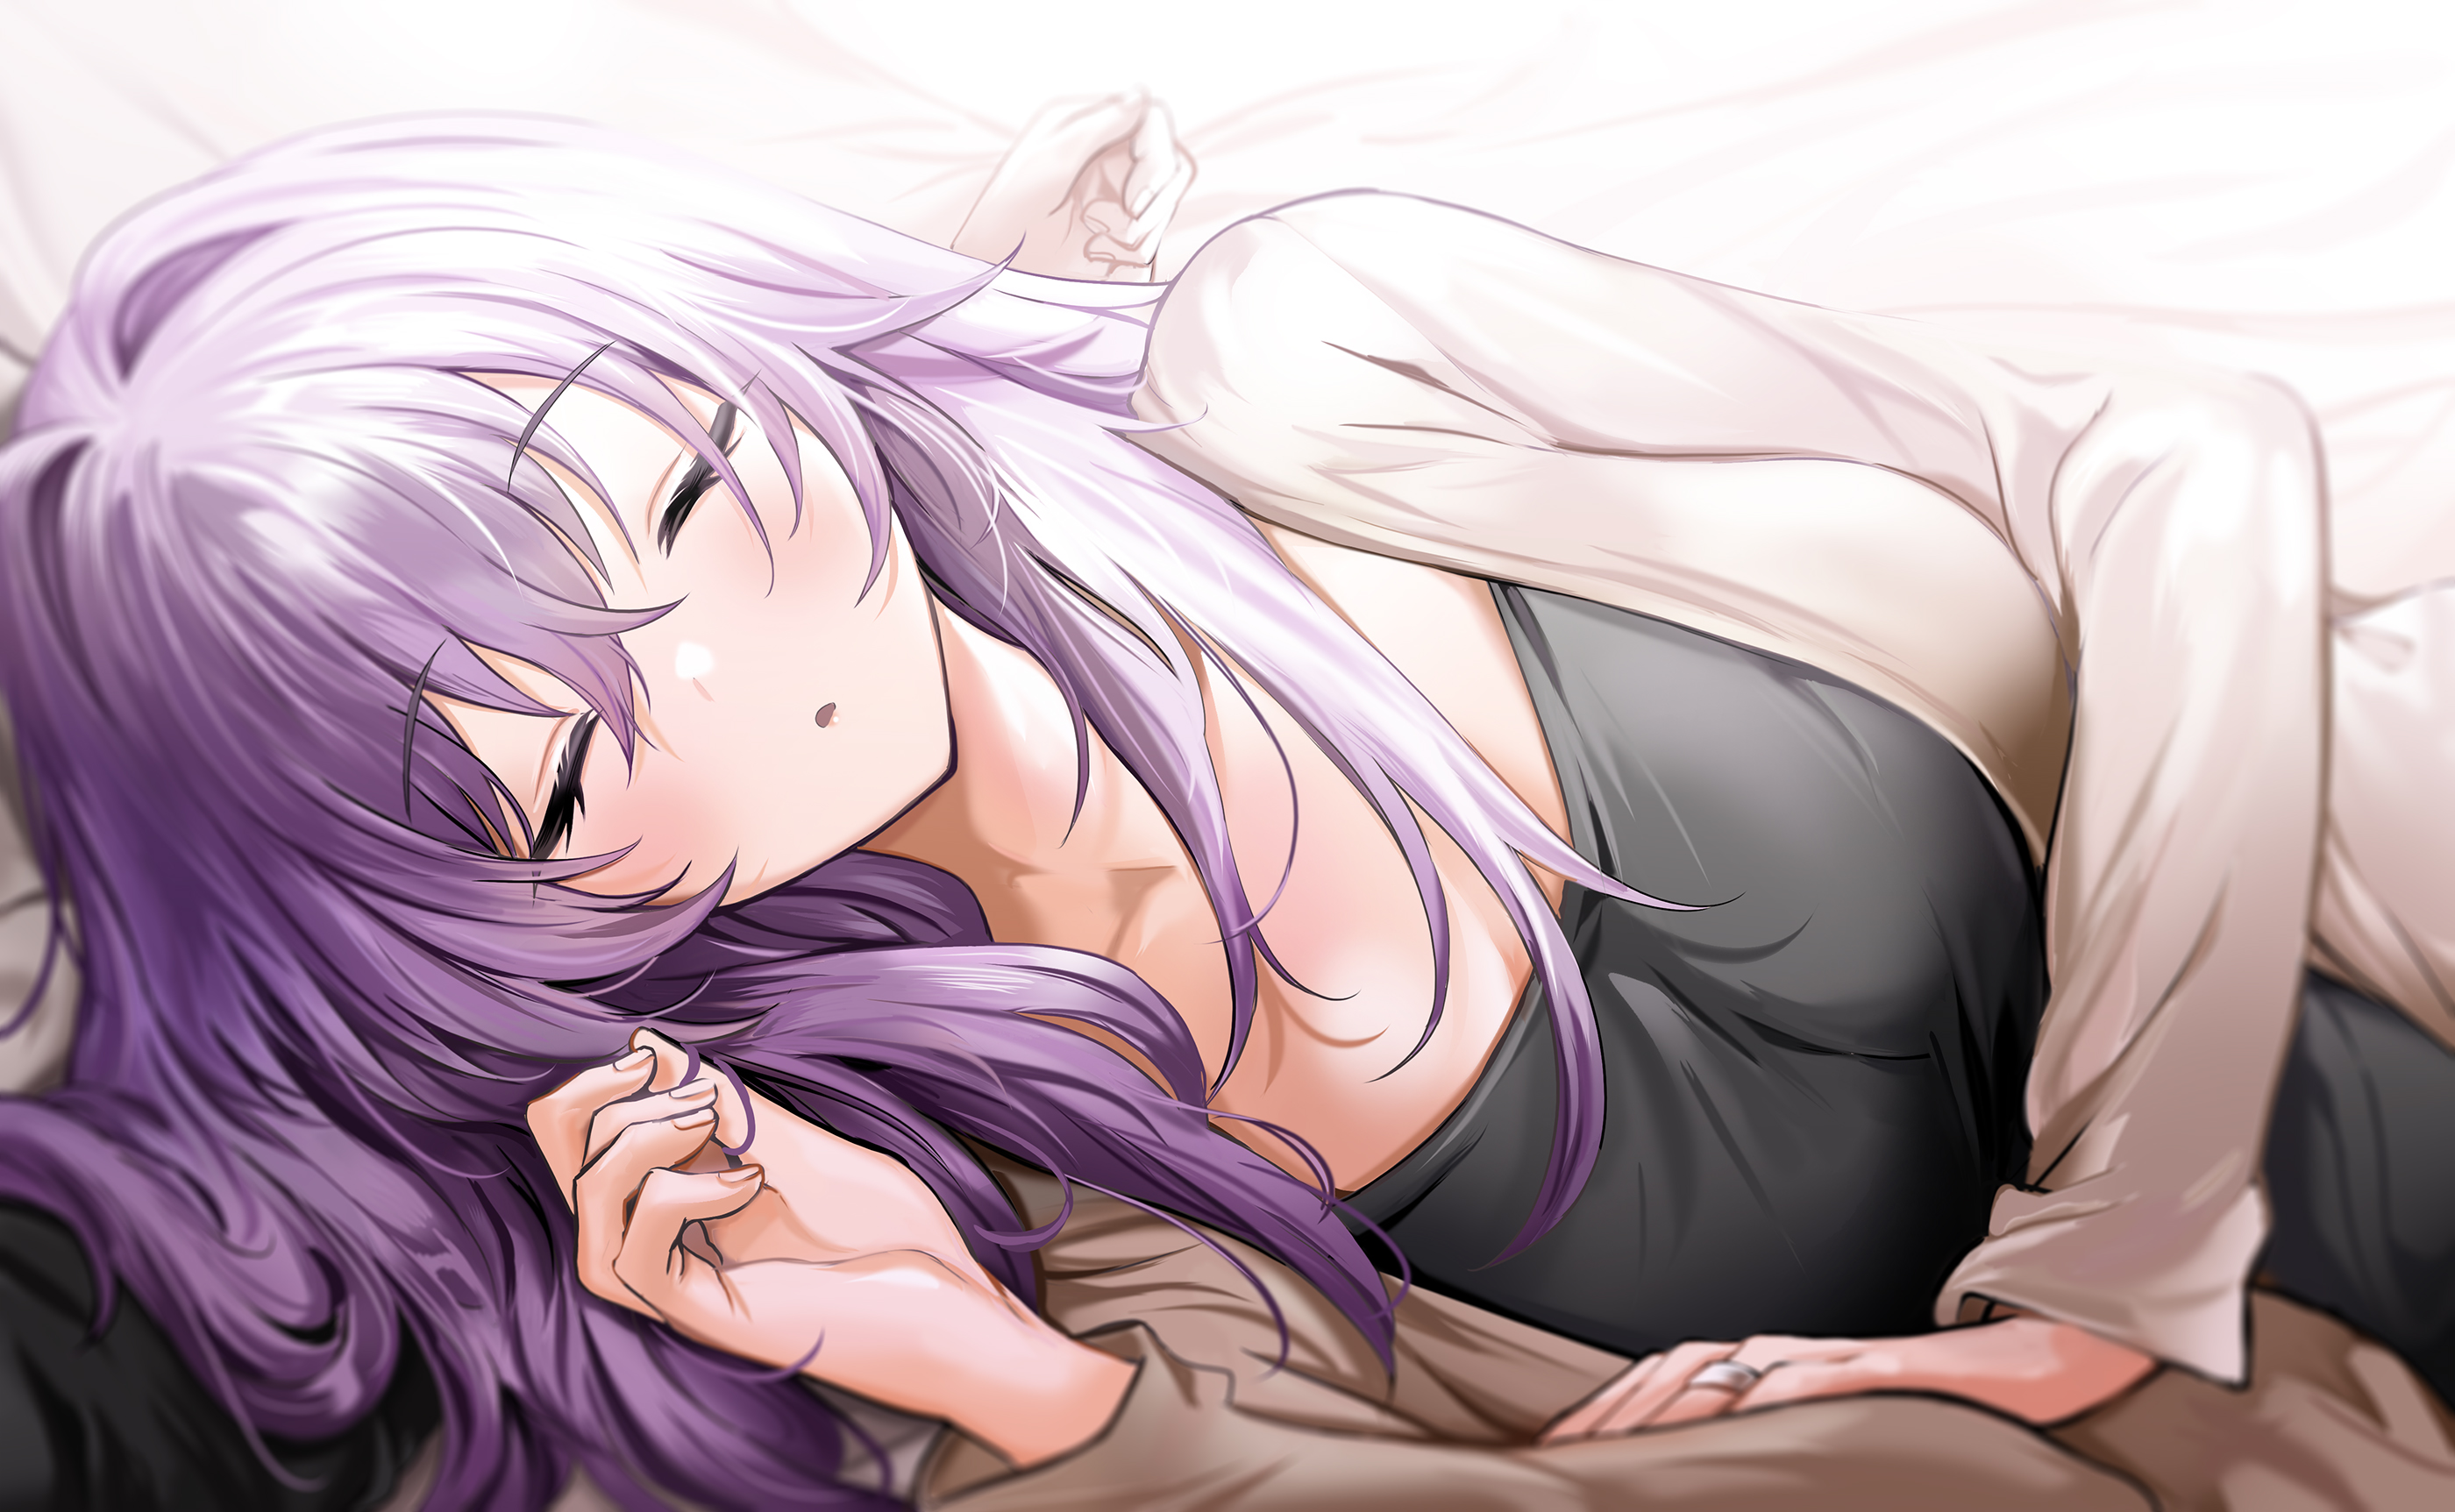 Anime Anime Girls Asayuki101 Artwork POV Sleeping Purple Hair 2800x1725